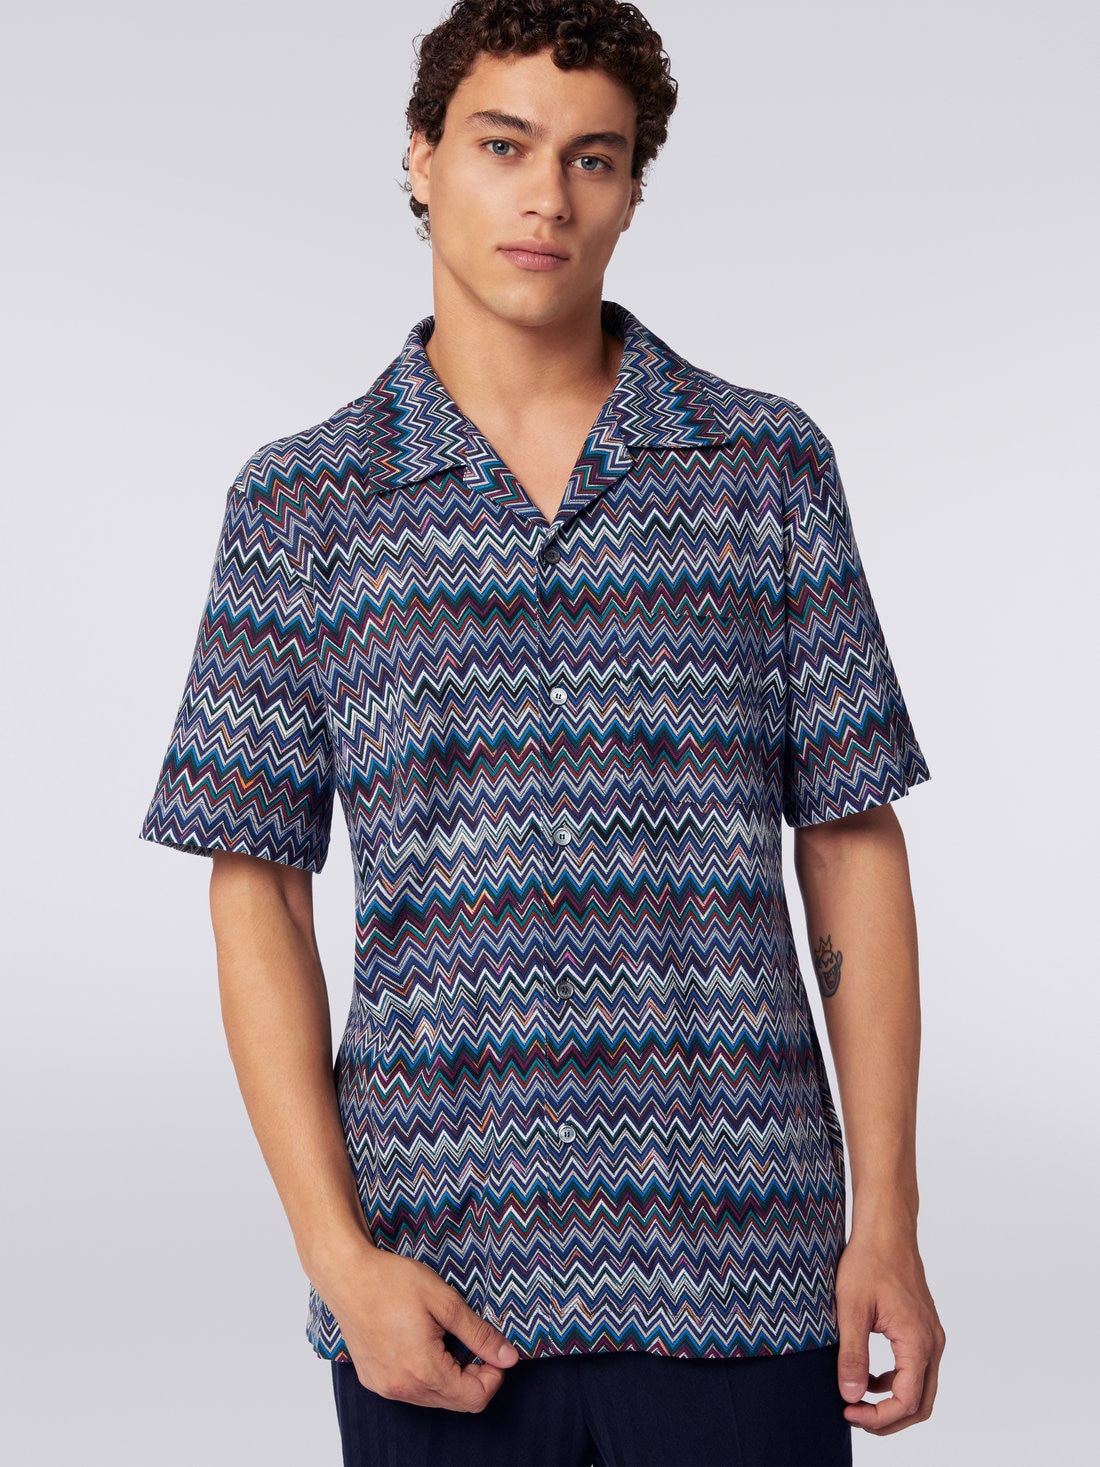 Kurzärmeliges Bowlinghemd aus Baumwolle und Viskose mit Zickzackmuster, Marineblau  - US23WJ08BR00OUSM8Y1 - 4